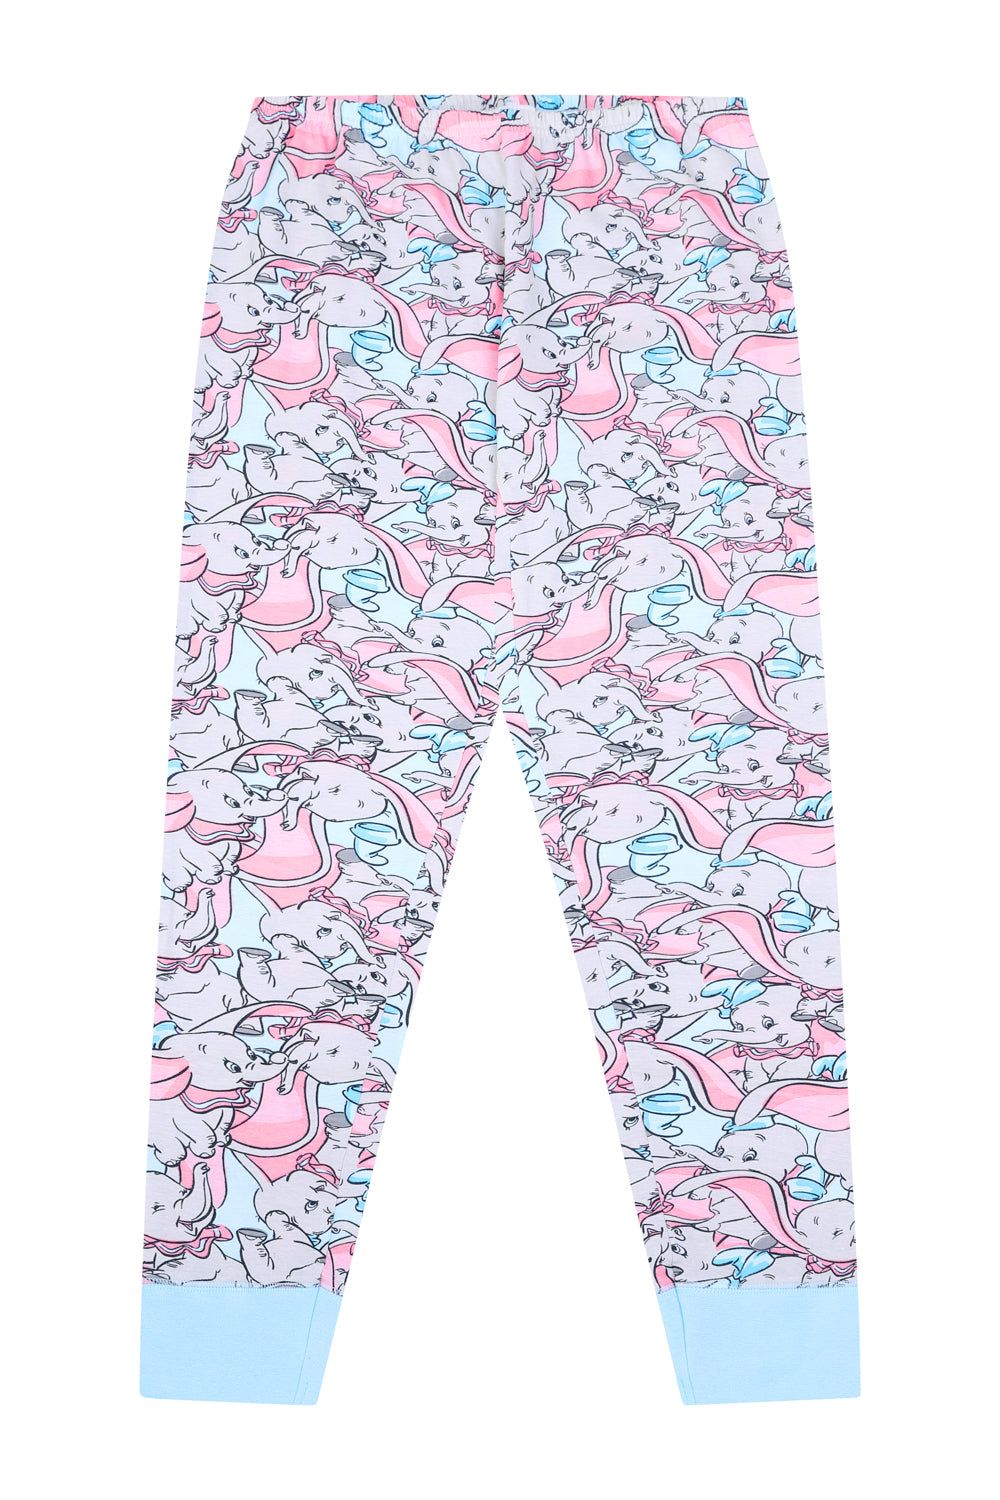 Ladies Disney Dumbo Long Pyjamas - Pyjamas.com